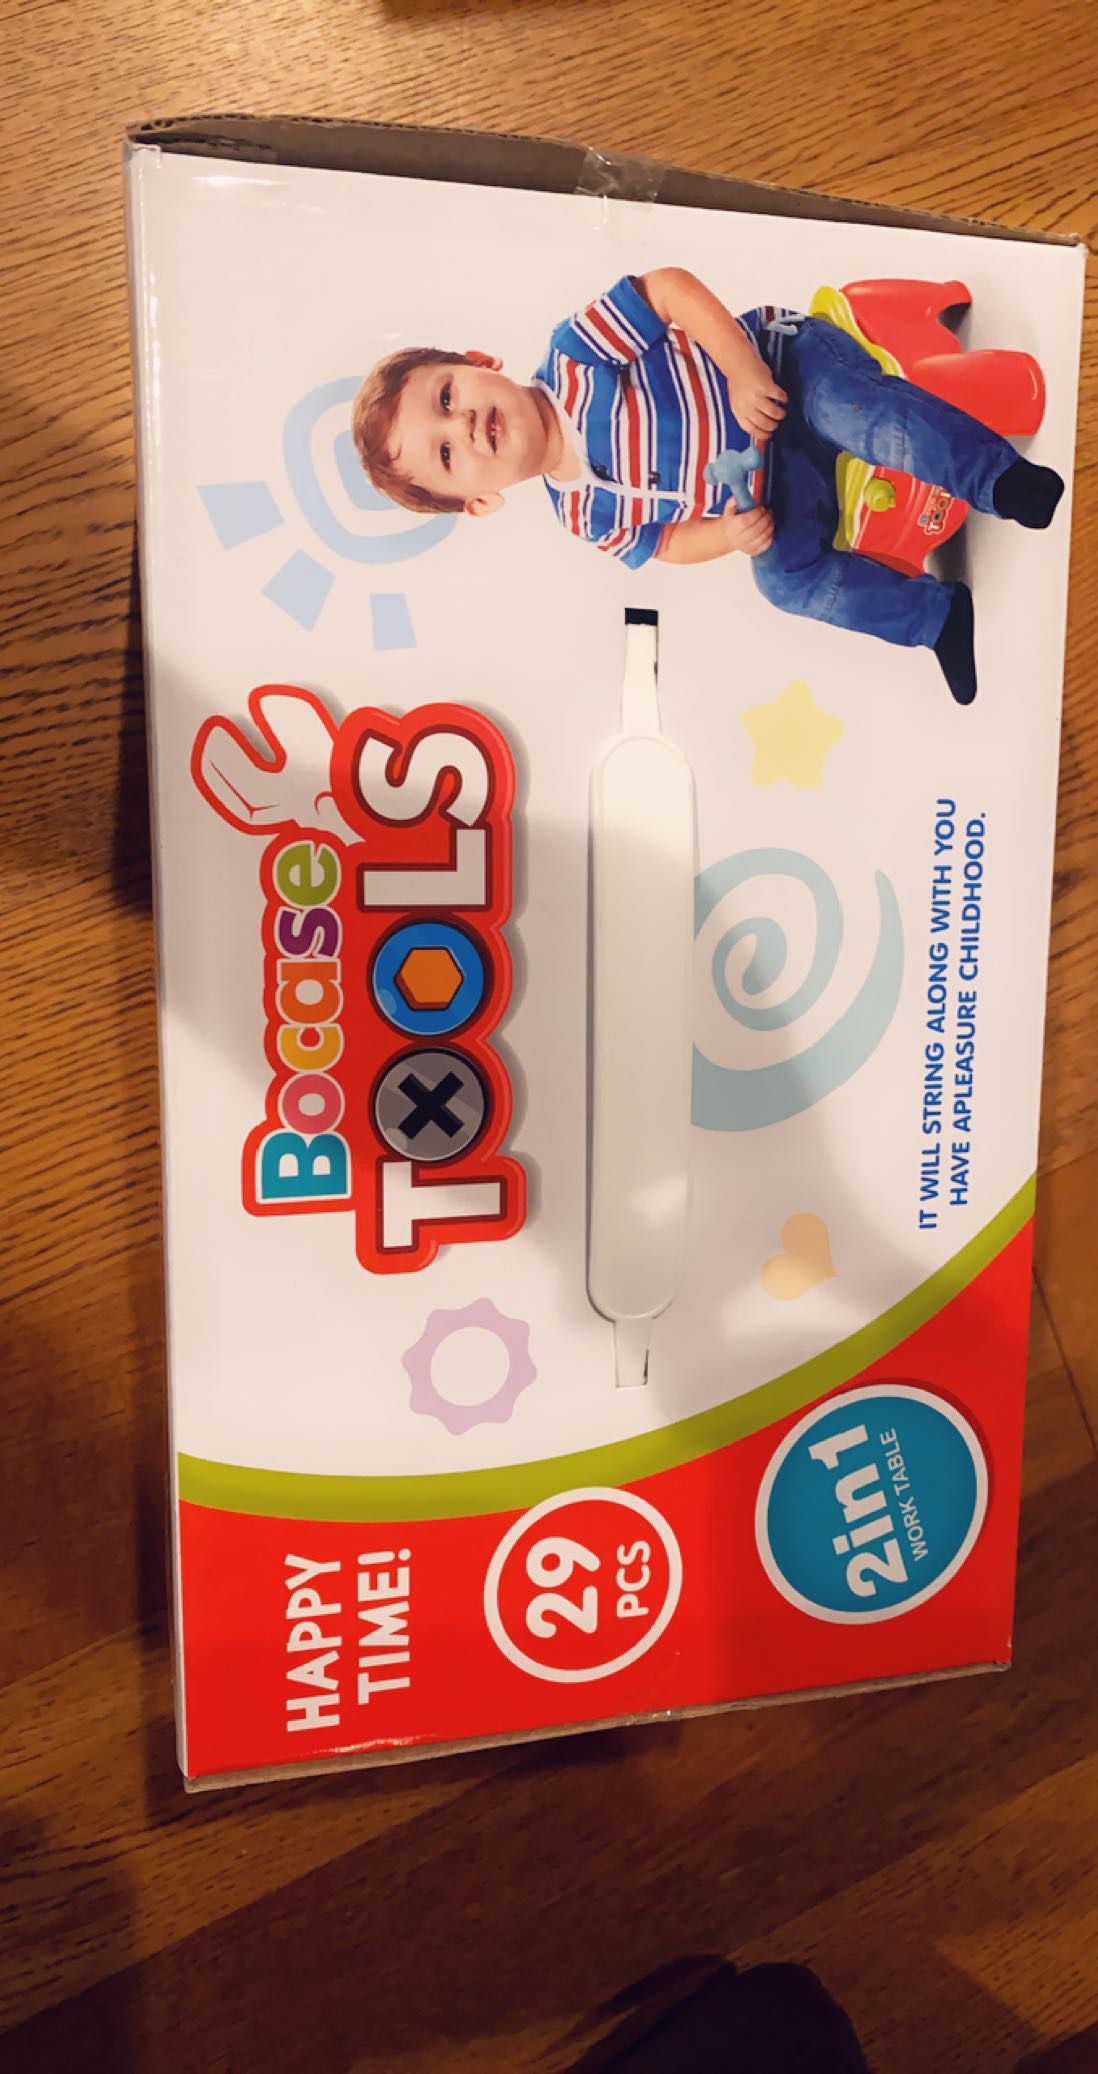 Toddler Tool Set 